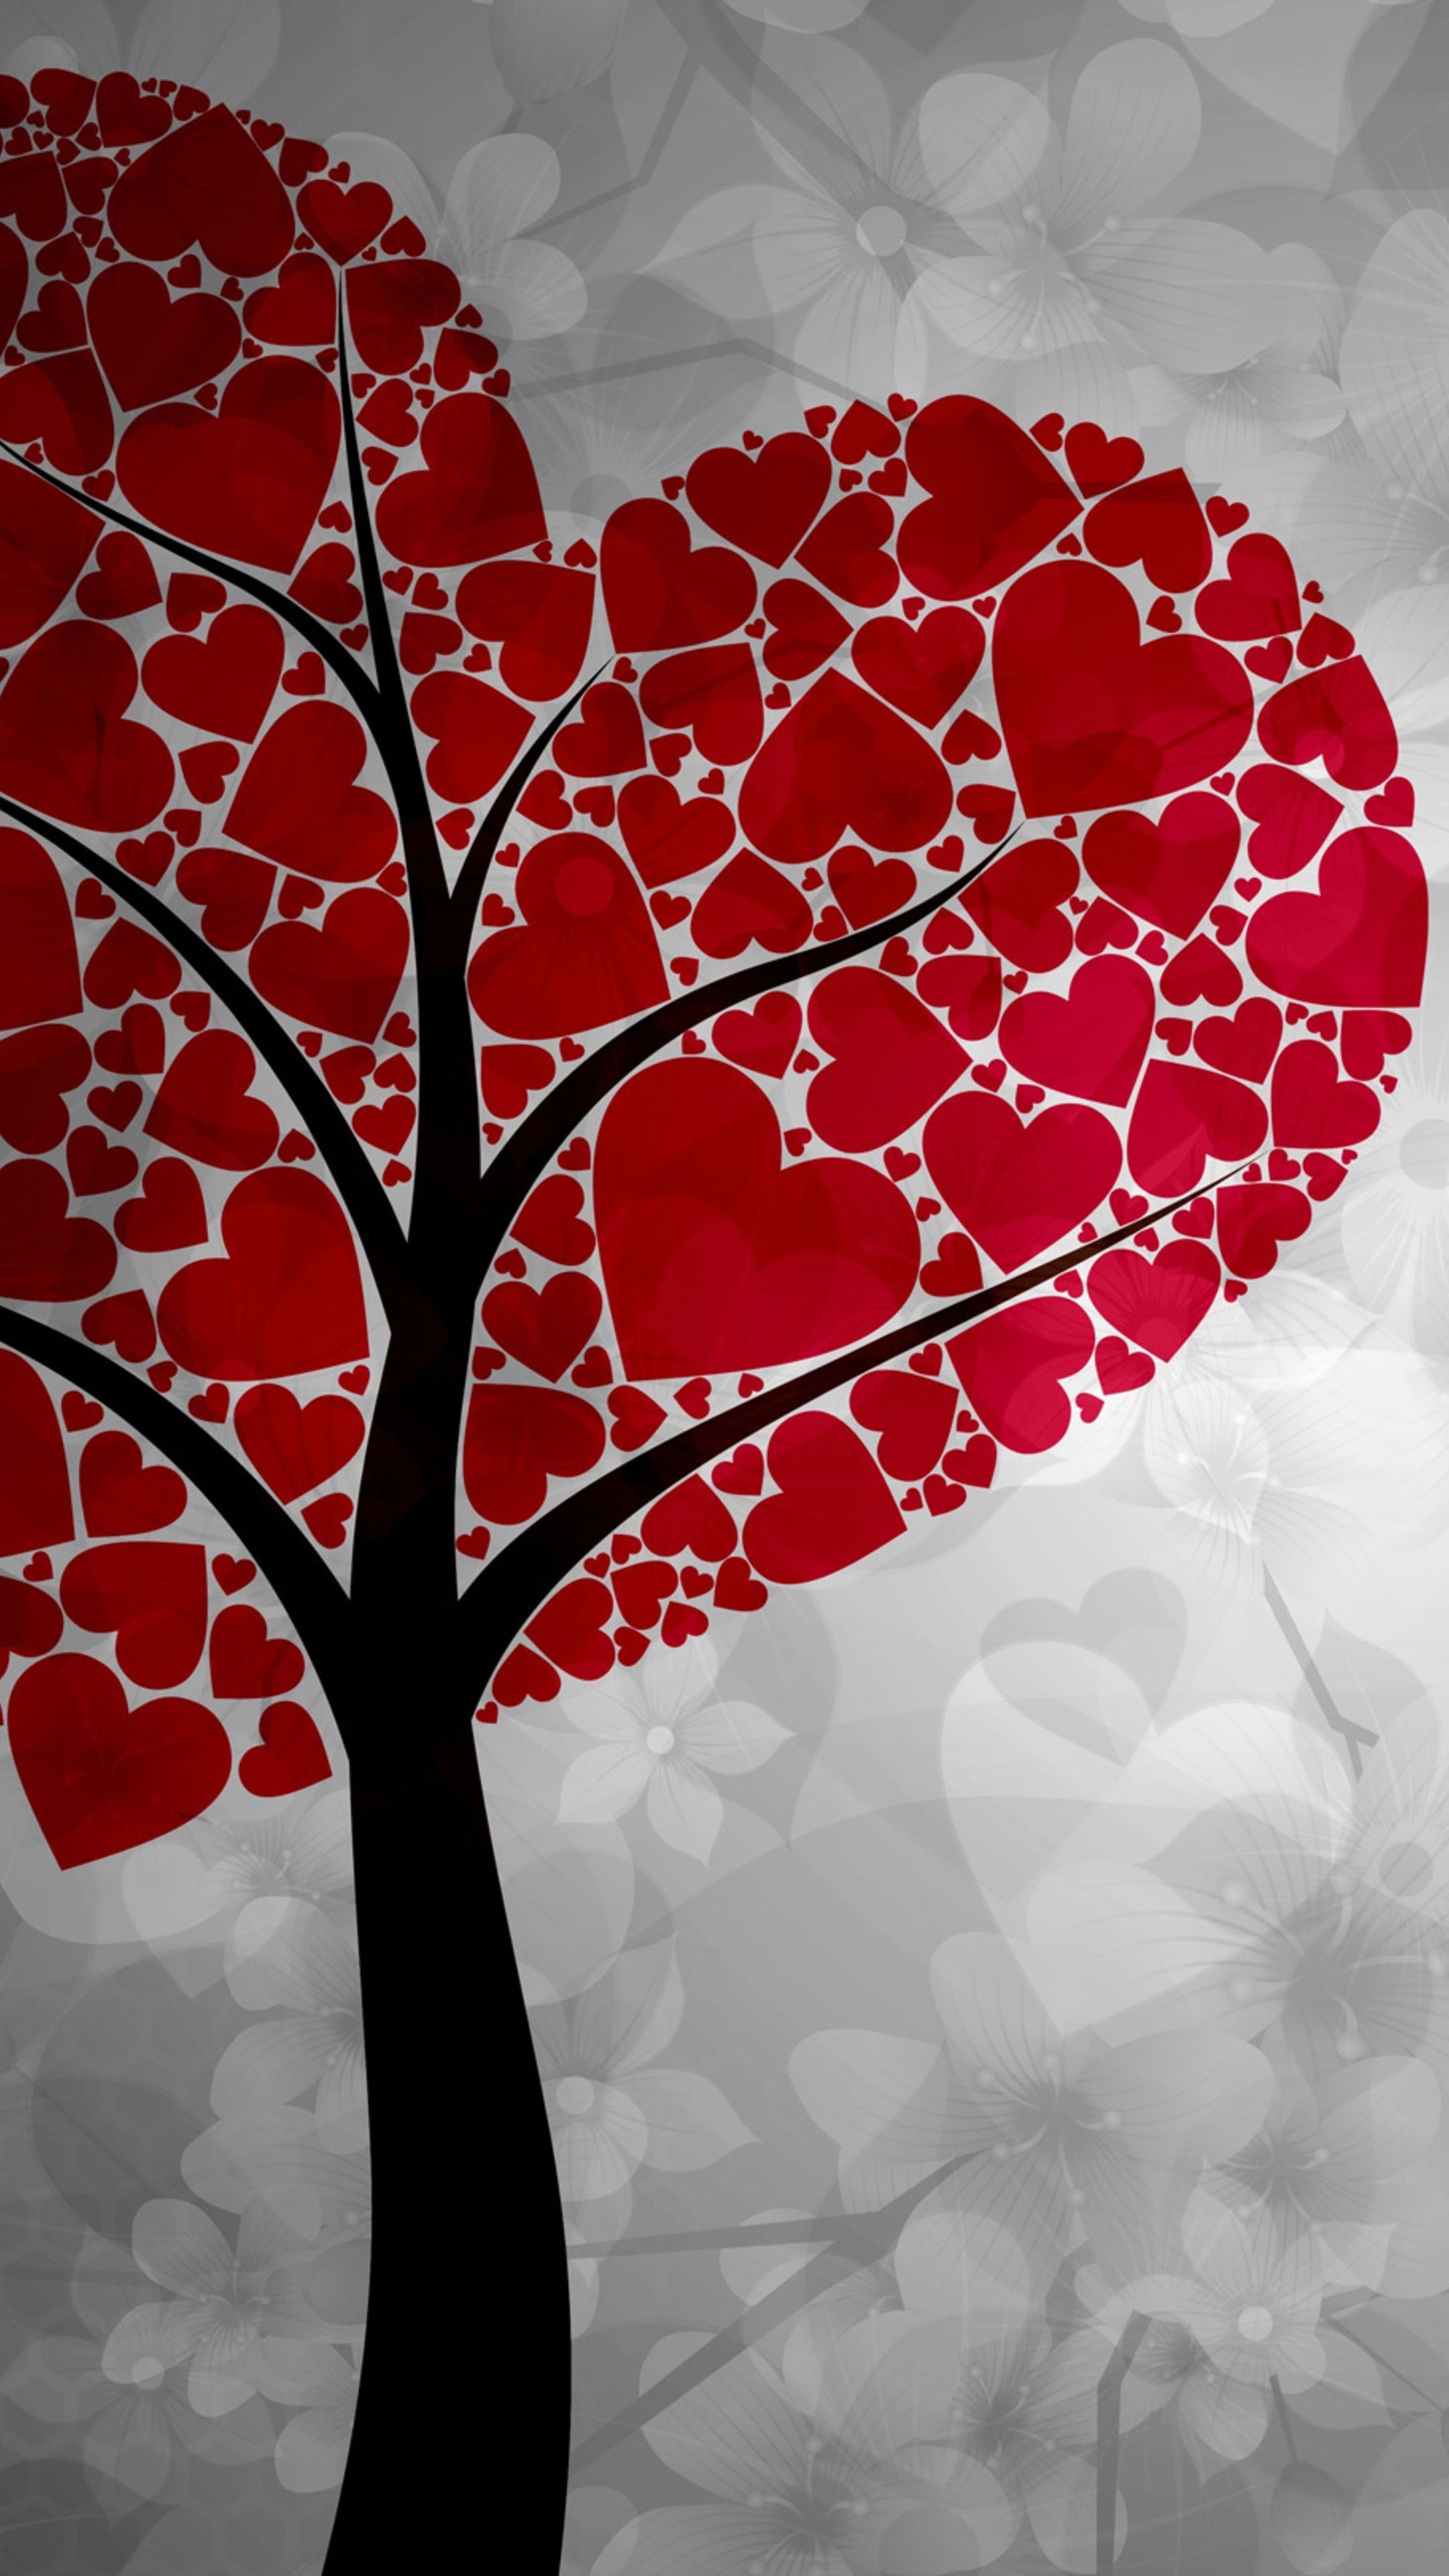 Hearts, Heart art wallpapers, Heart art backgrounds, 2160x3840 4K Phone